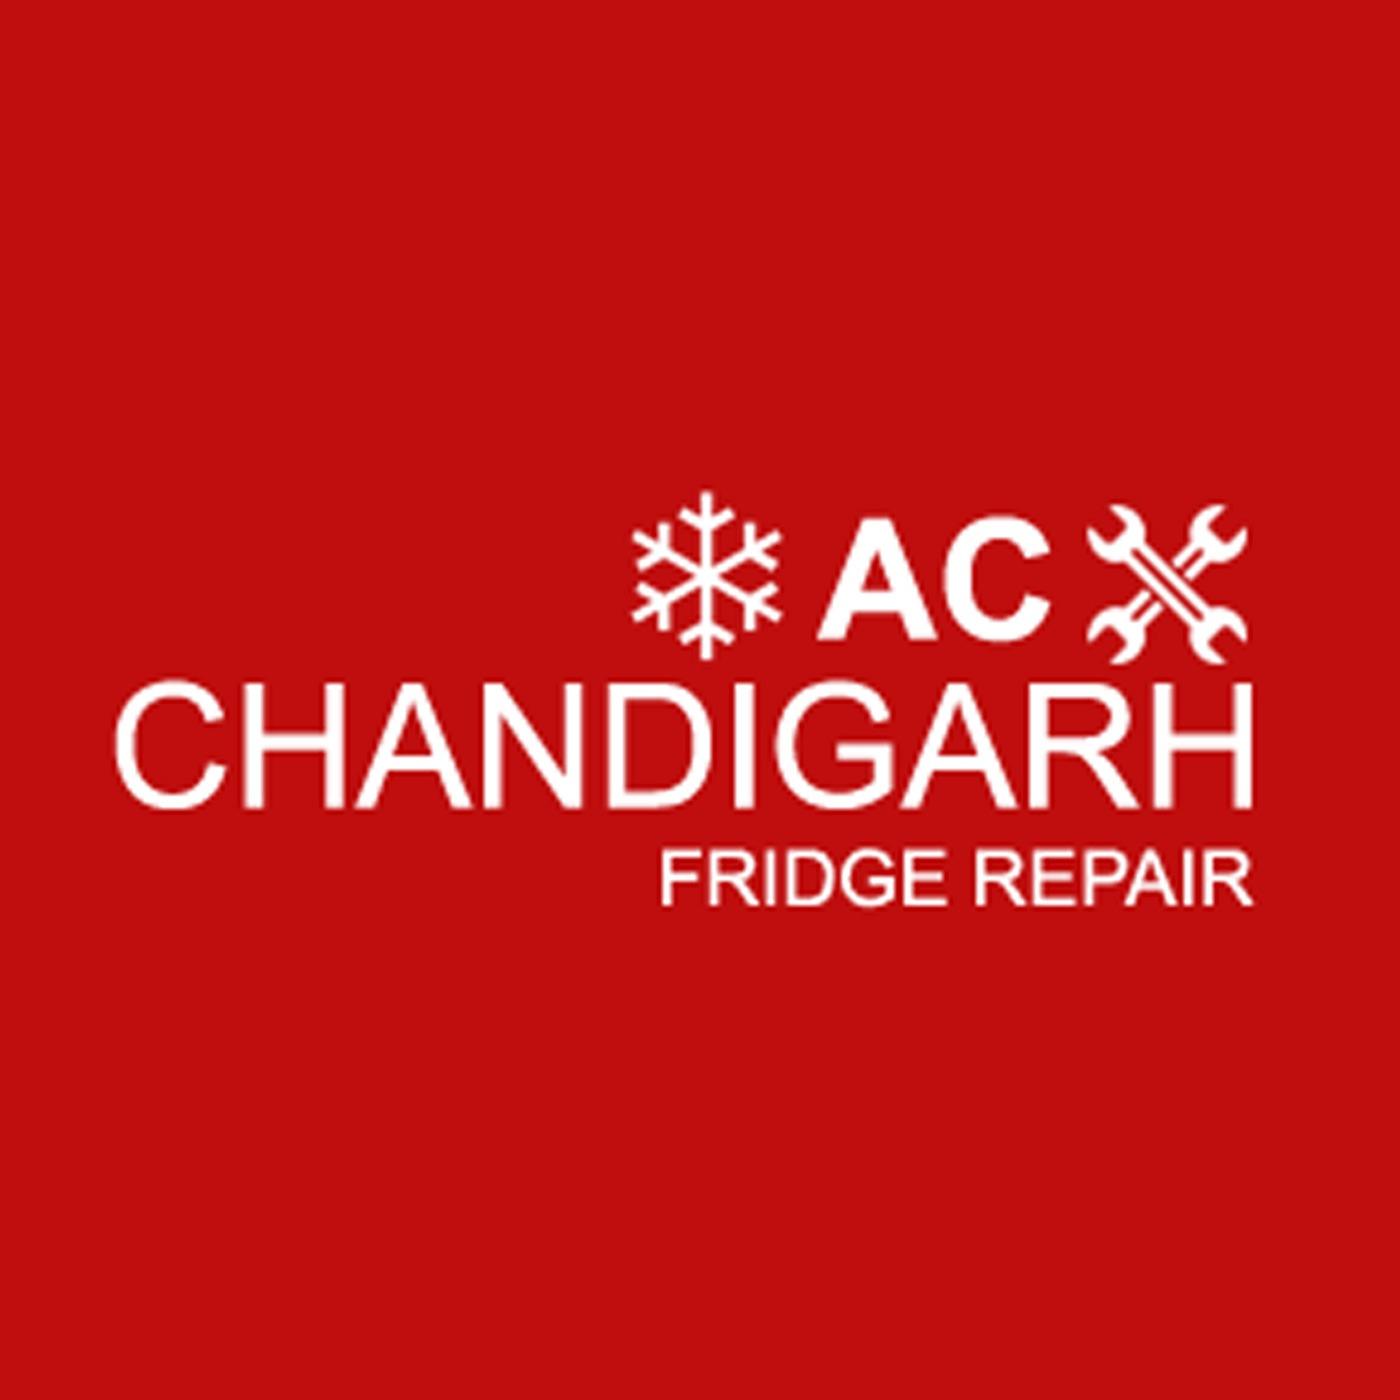 Washing Machine, AC and Refrigerator Repair Services Chandigarh